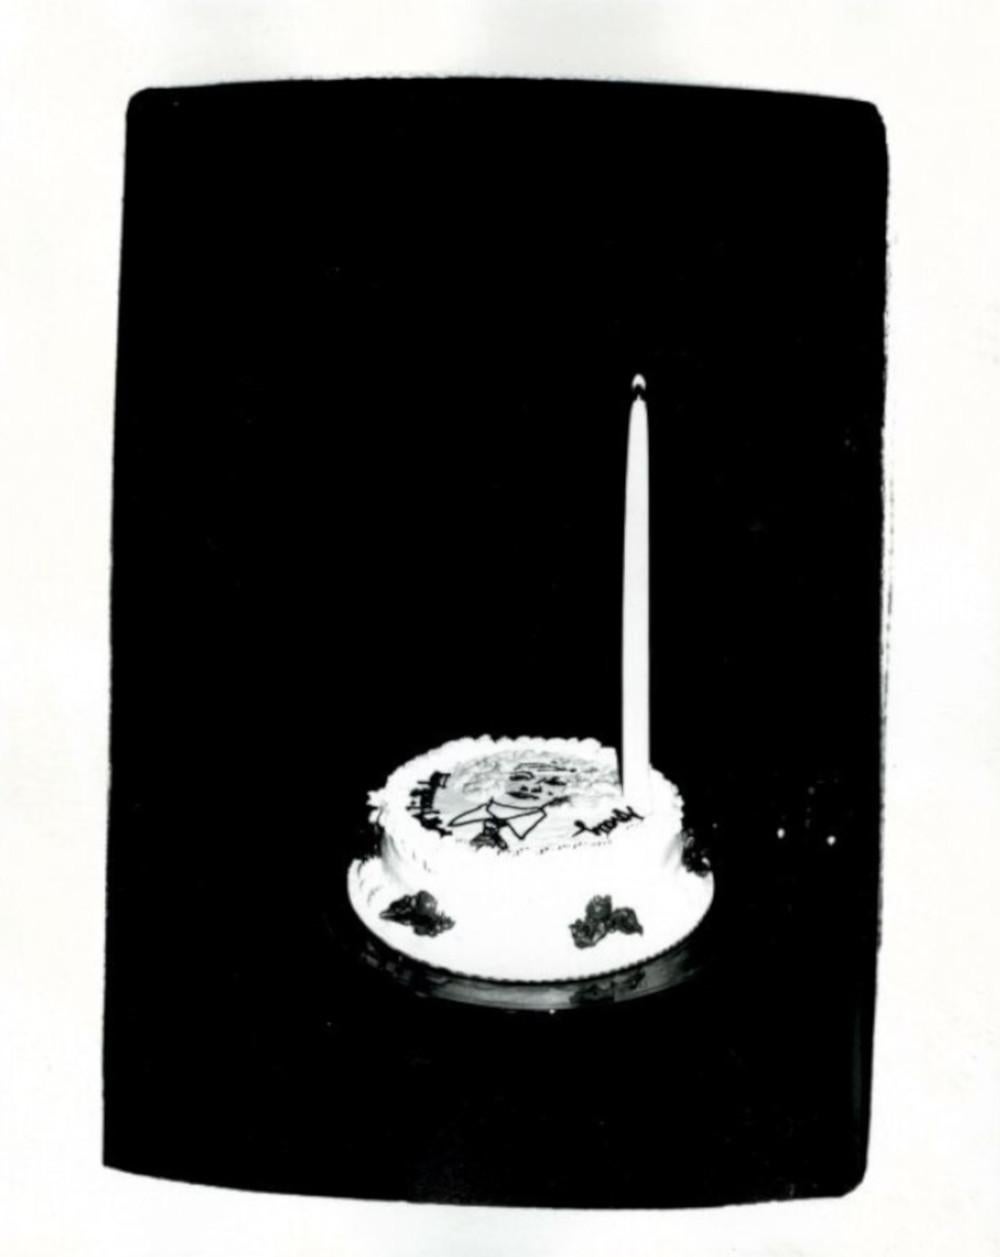 Black and White Photograph Andy Warhol - Cache-cadeau de anniversaire pour Andy